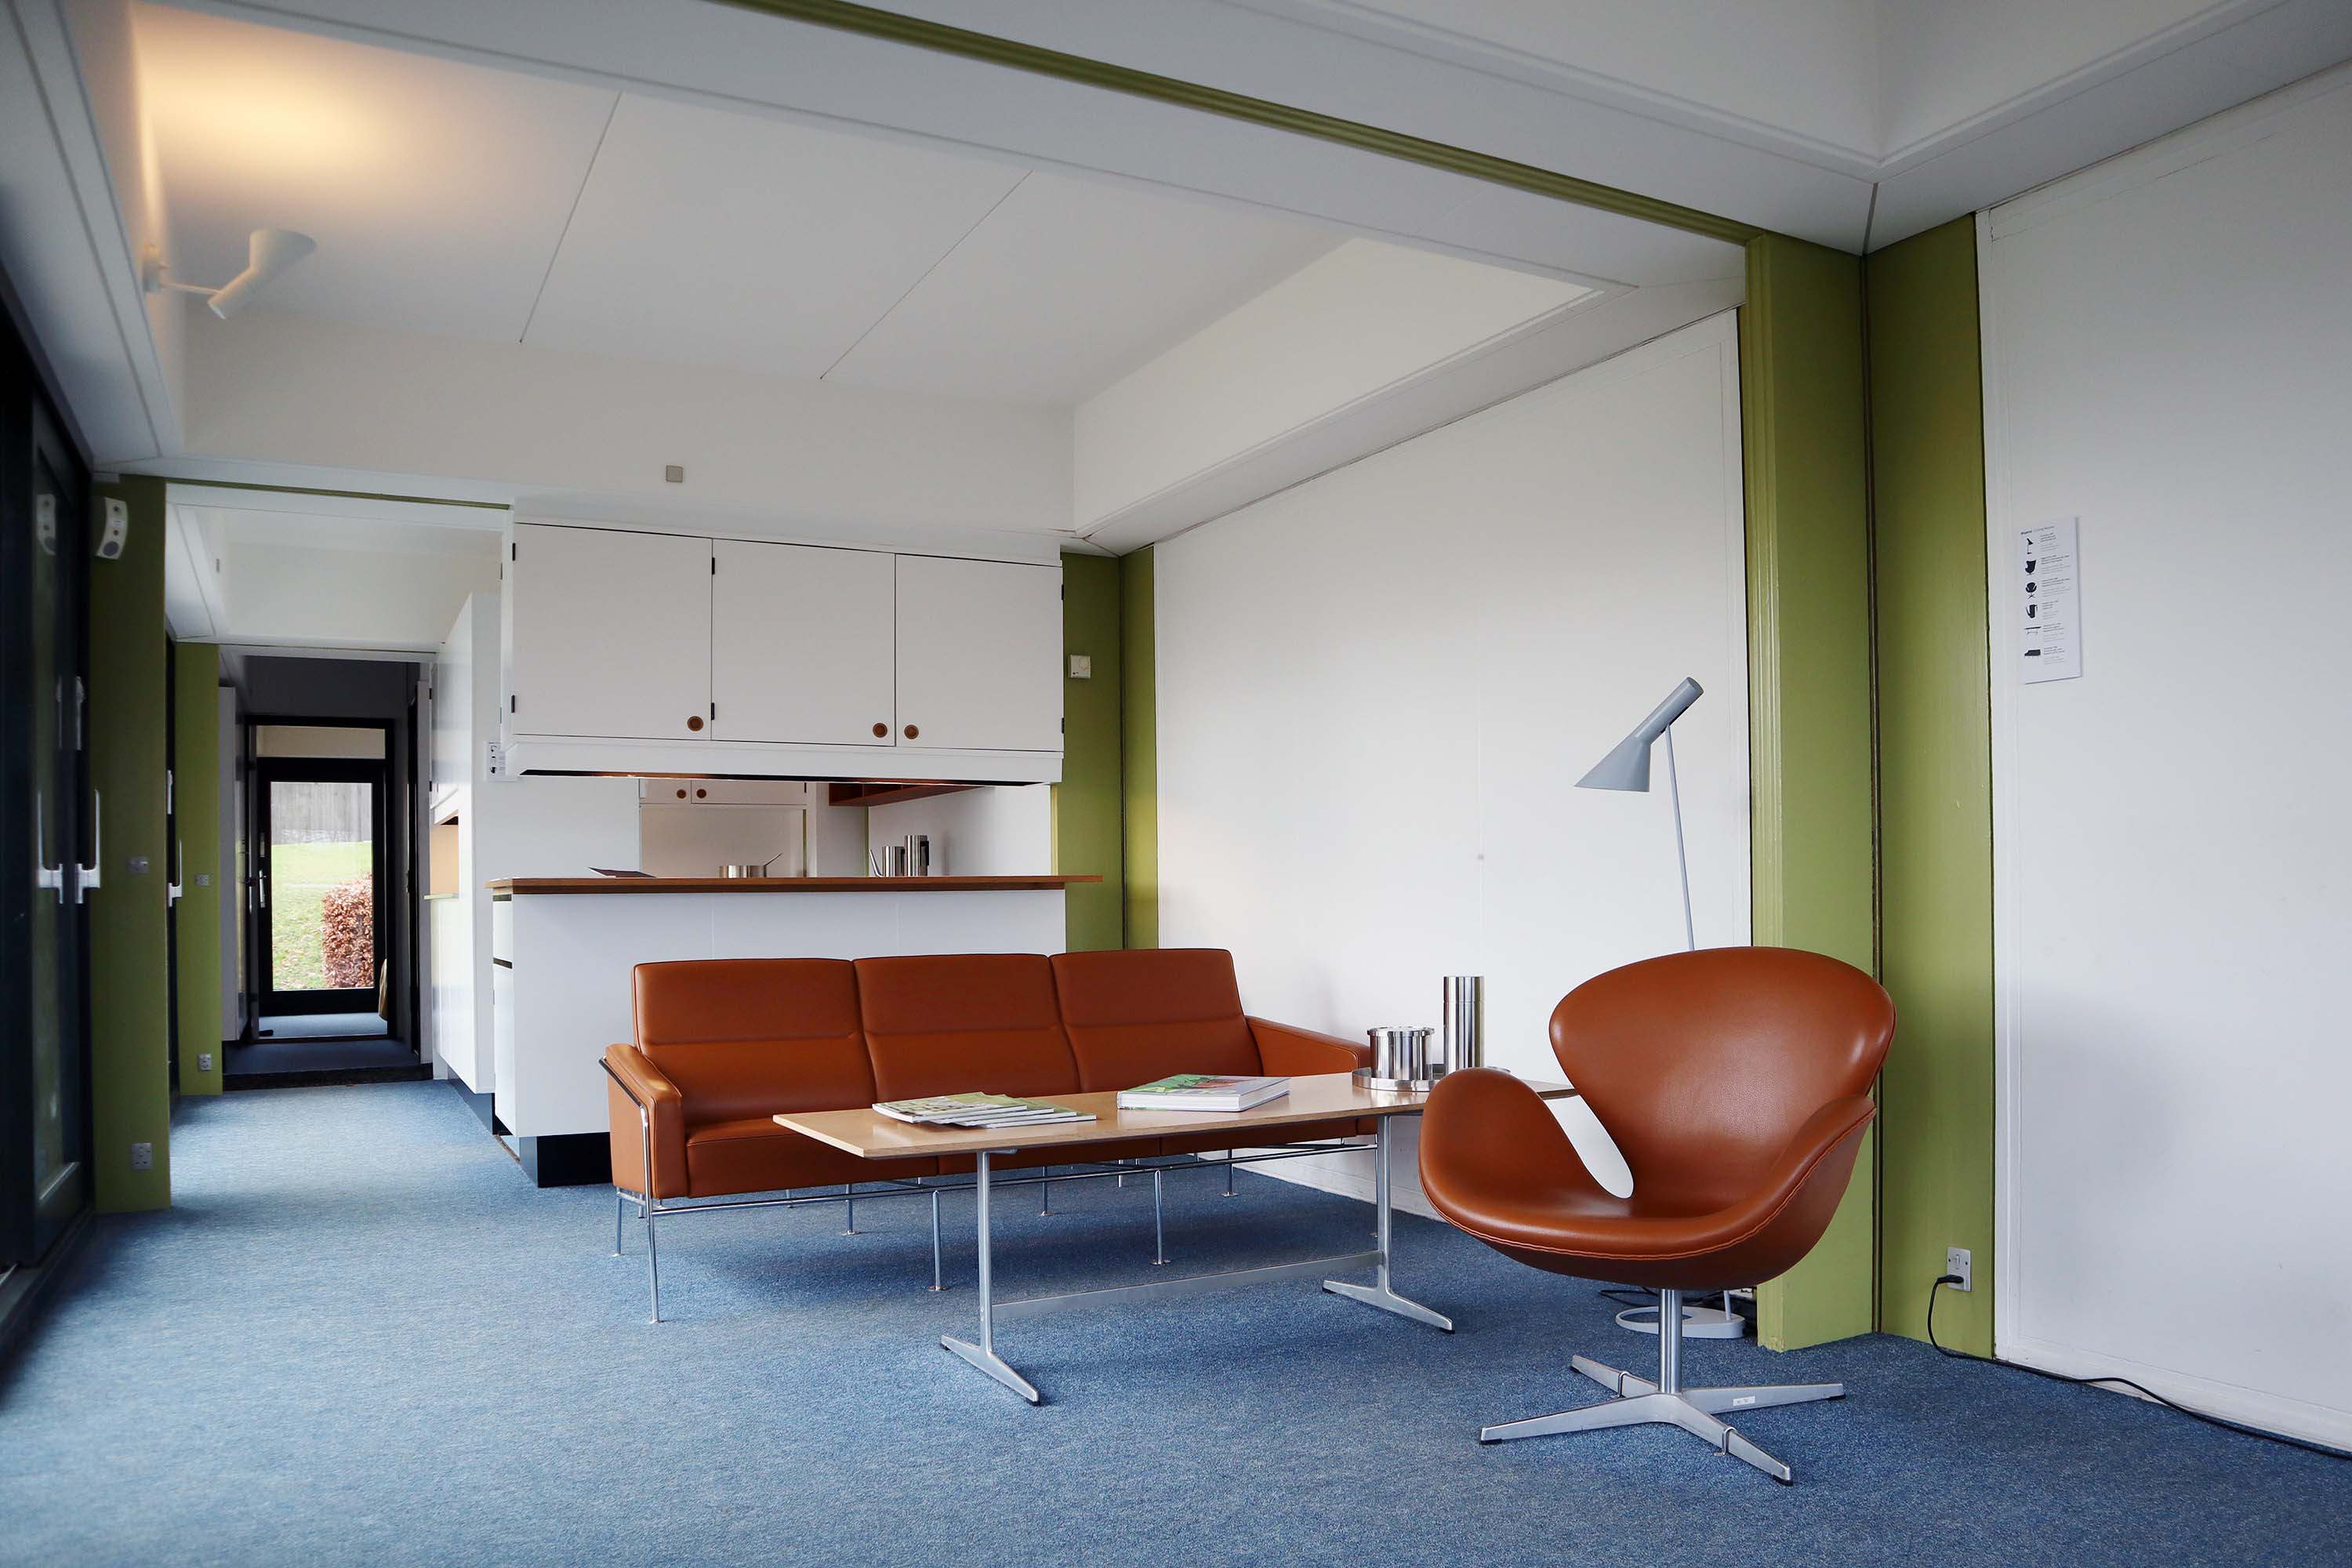 Das modulare Haus wurde 1970 von Arne Jacobsen entworfen und steht seit 2015 im Skulpturengarten des Trapholt Museums.